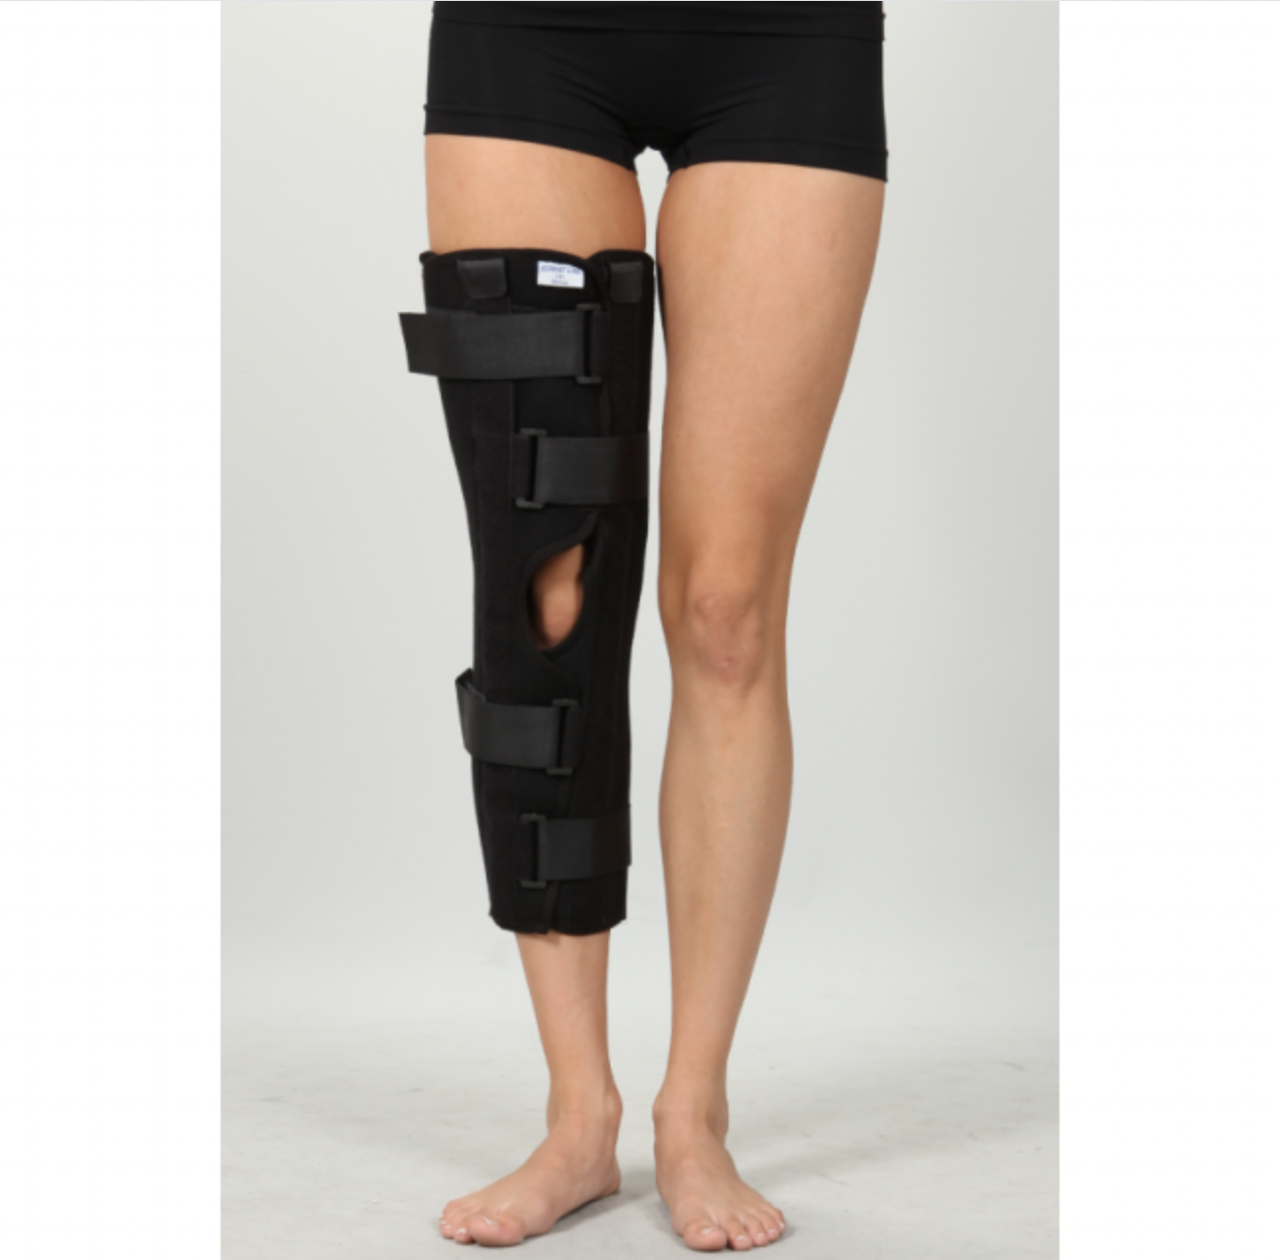 Тутор на колінний суглоб, універсальний Orthopoint SL-12 дихаючий колінний ортез, бандаж на коліно Розмір M